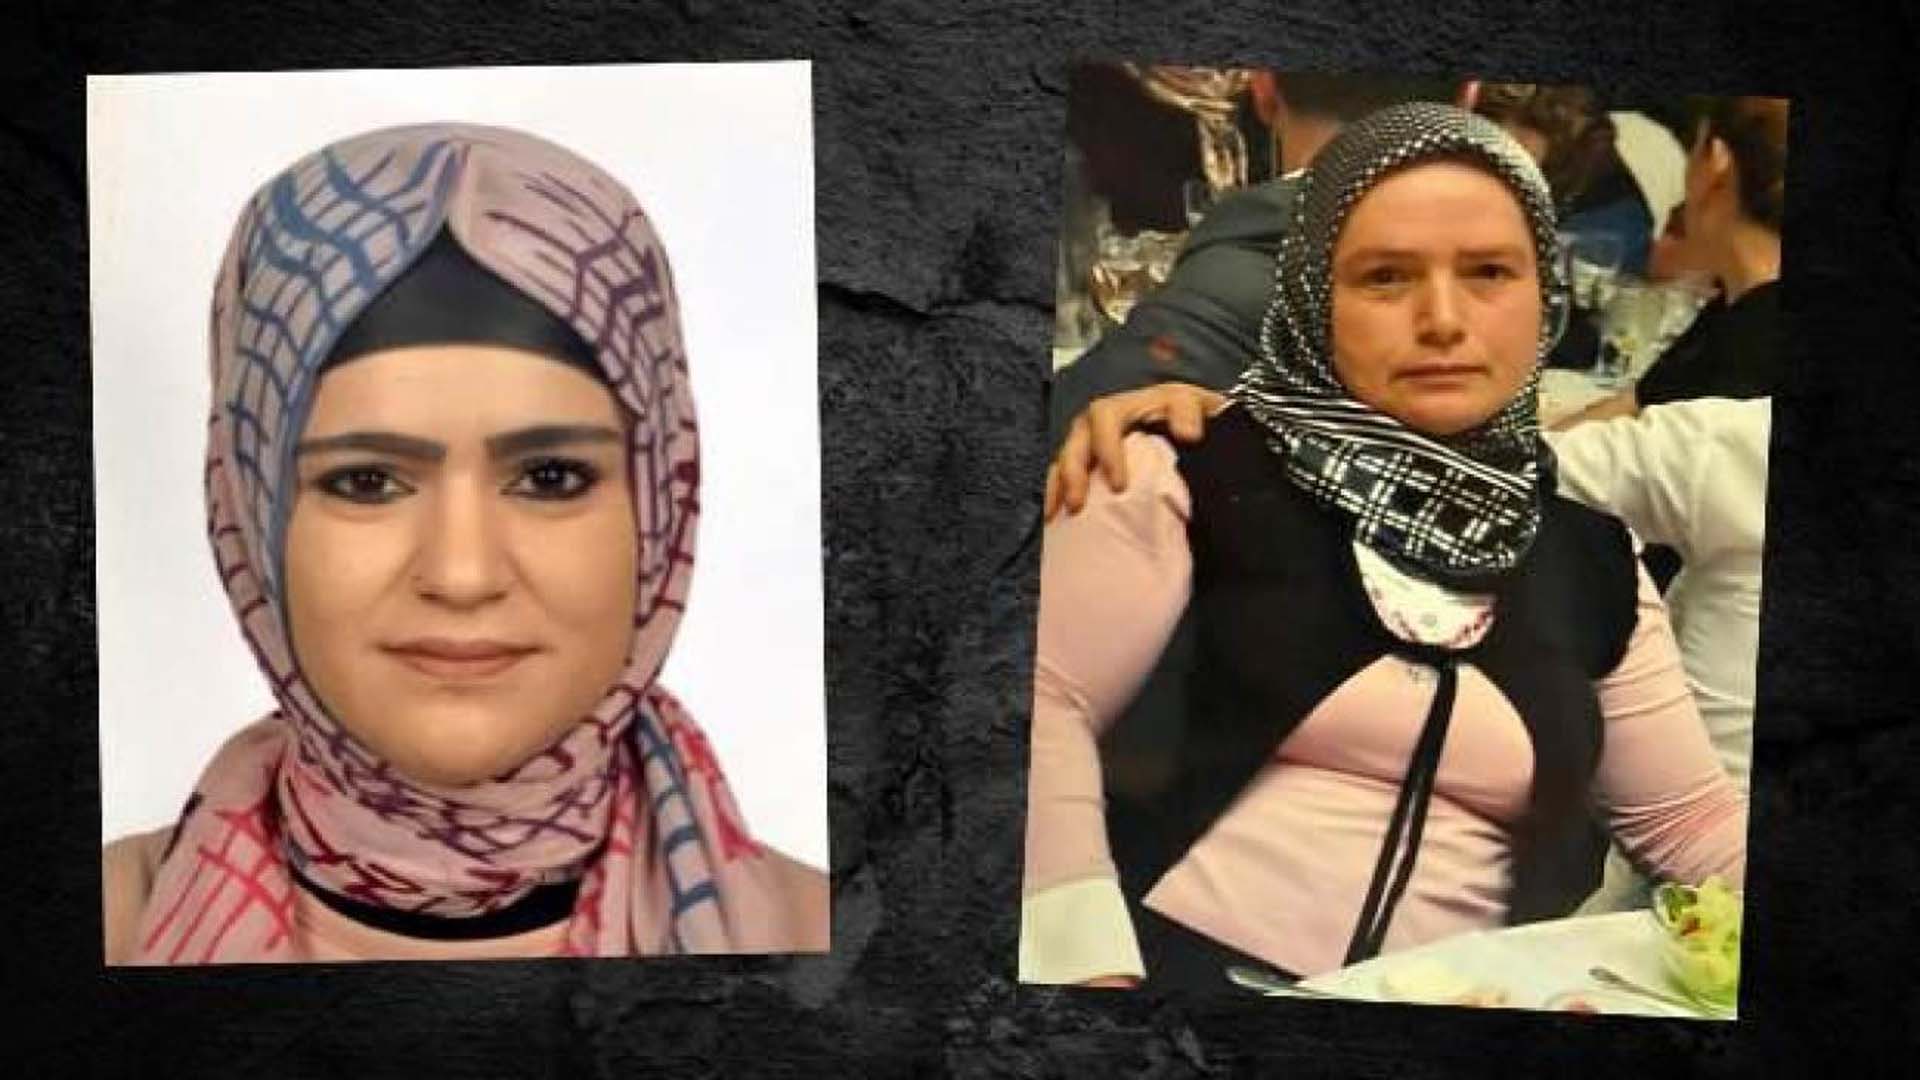 Cinci hocaya uydu, eşi Özge Nur Tekin'in sırtına oklava ile 100 kez vurdu, hacamat yaptırdı! Genç kadın hayatını kaybetti 